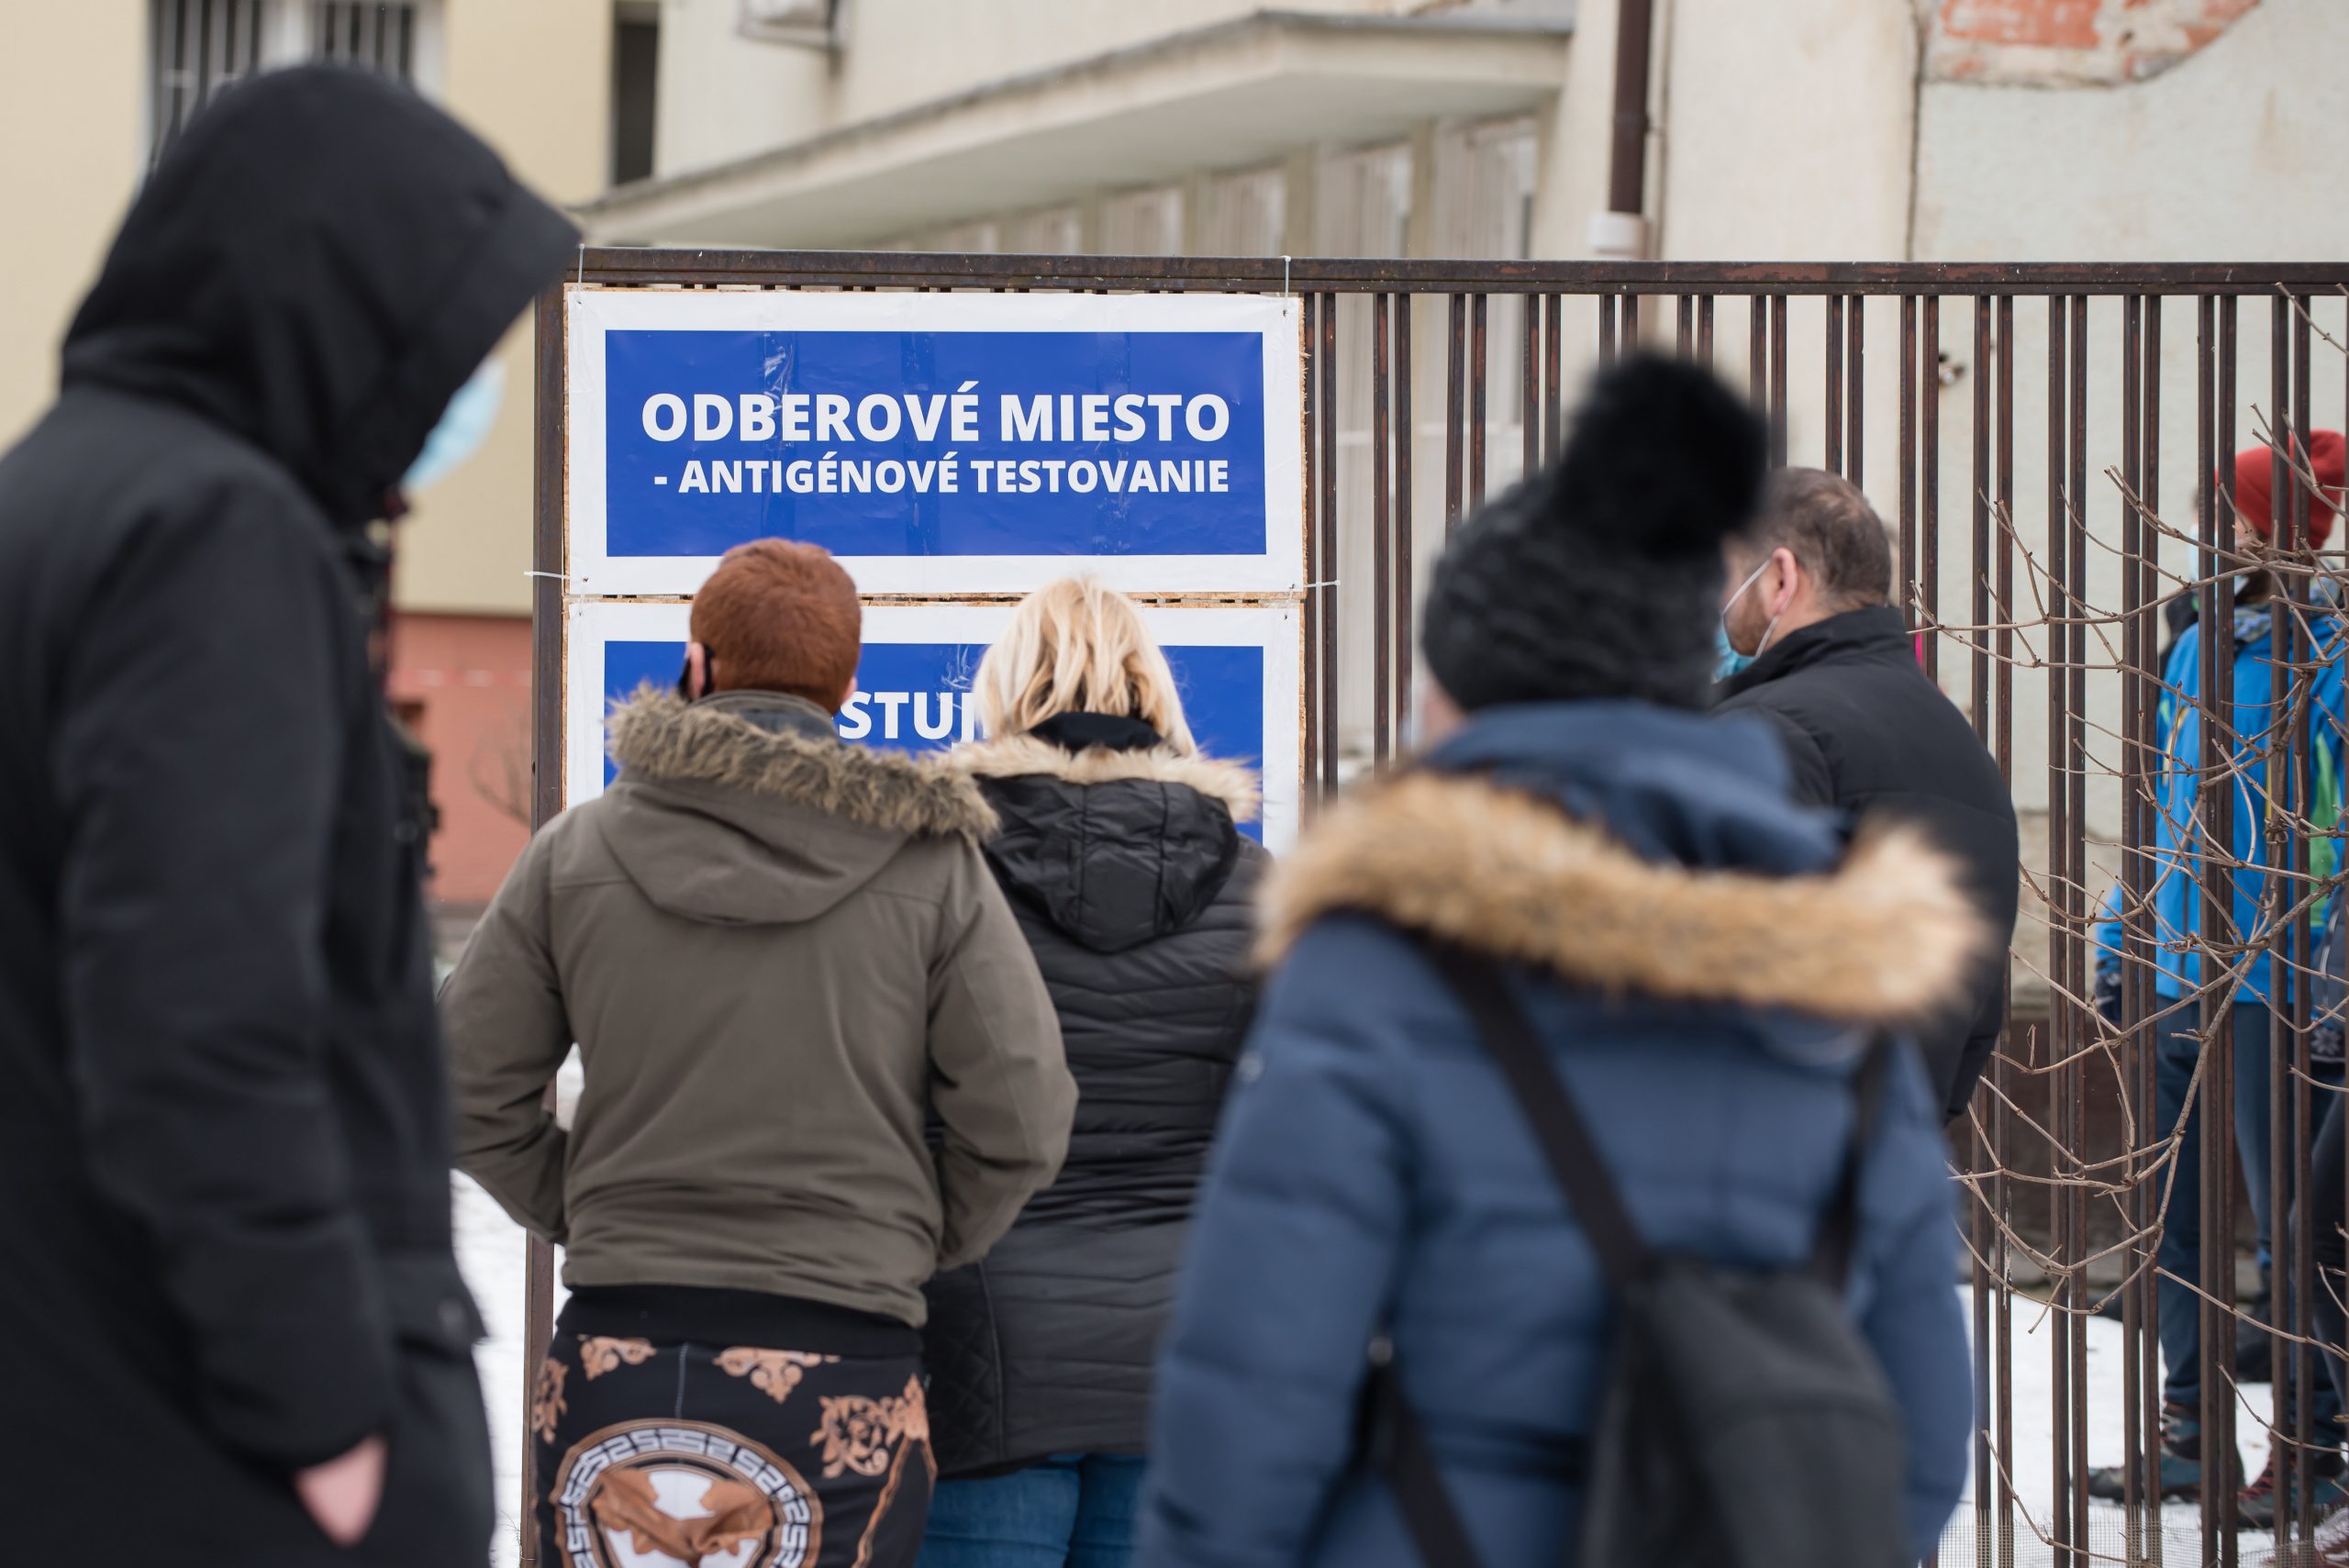 Eslovaquia confina a su población ante el aumento de casos de coronavirus